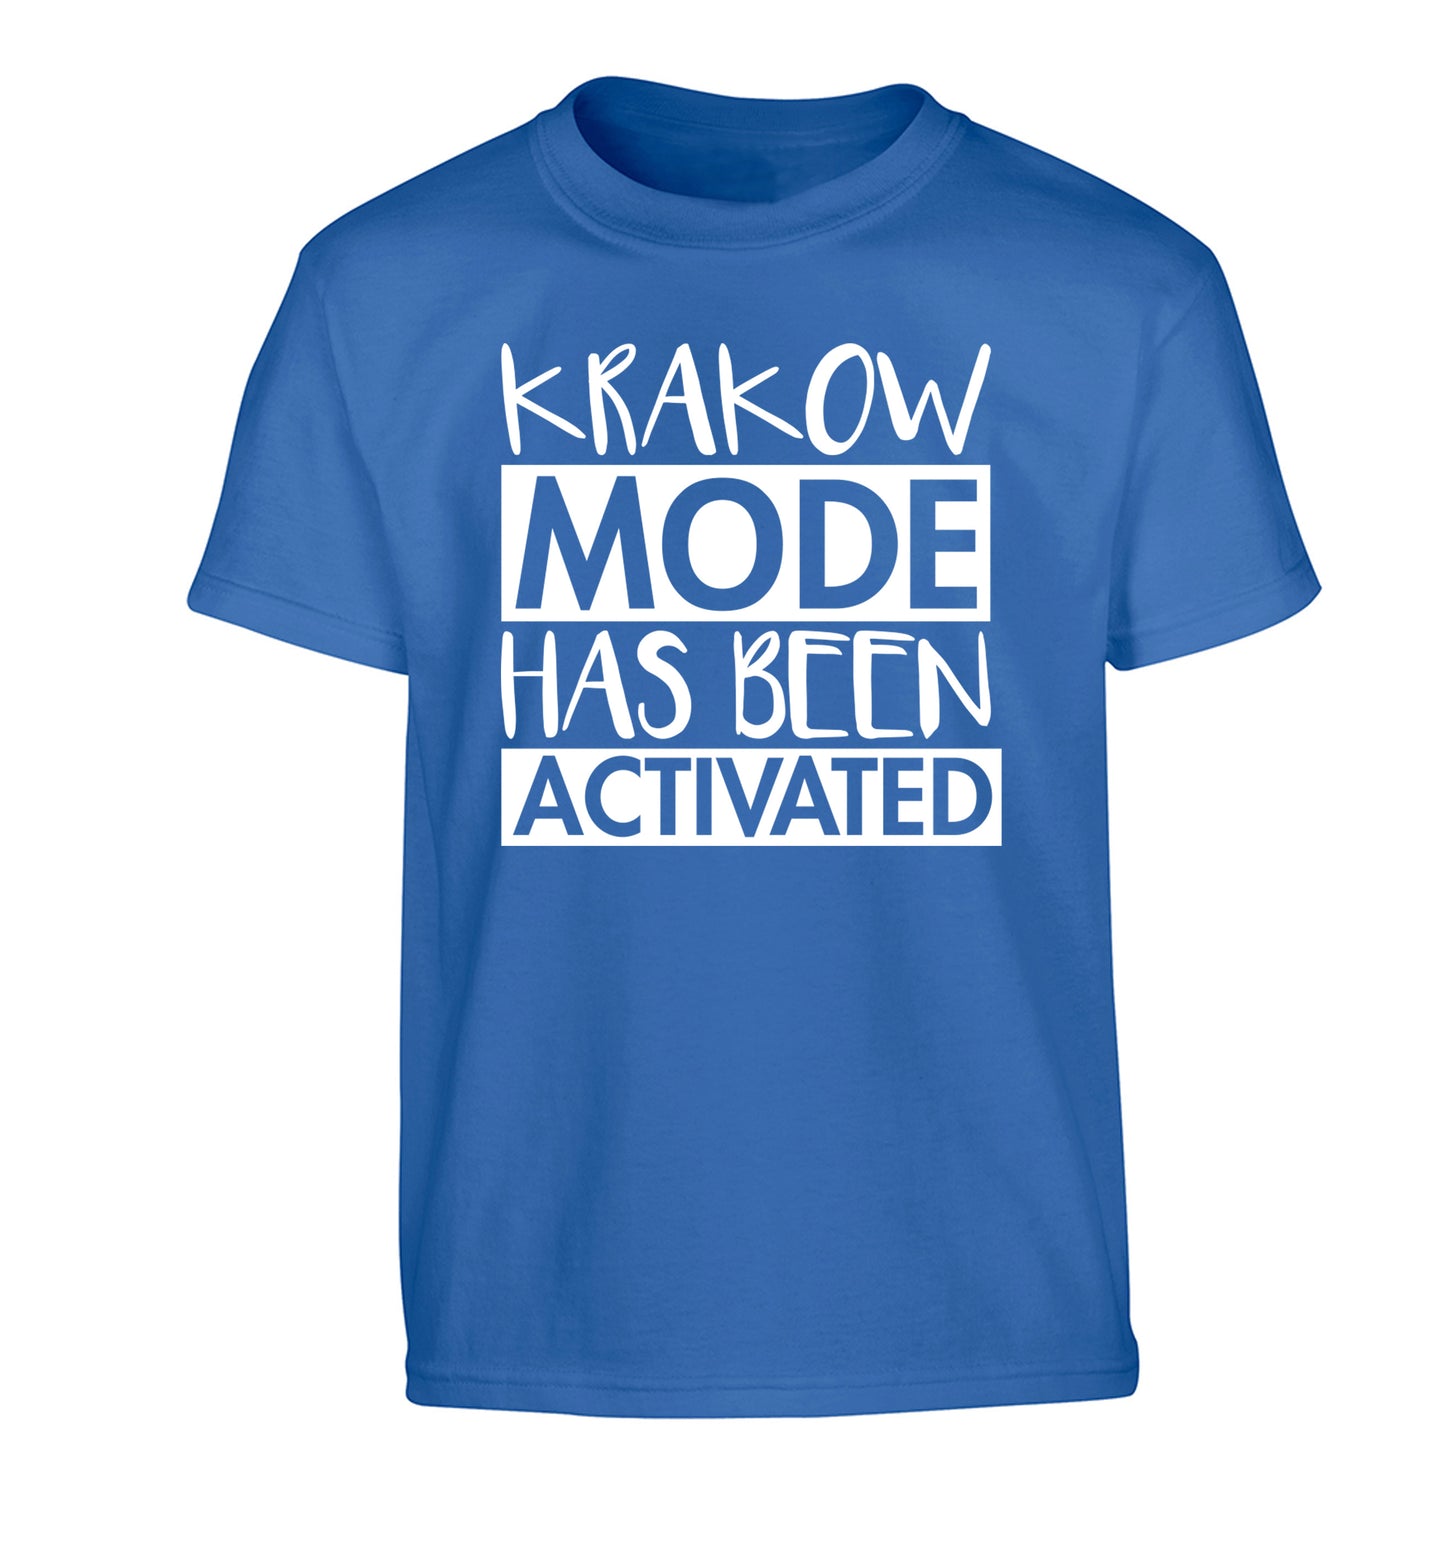 Krakow mode has been activated Children's blue Tshirt 12-13 Years